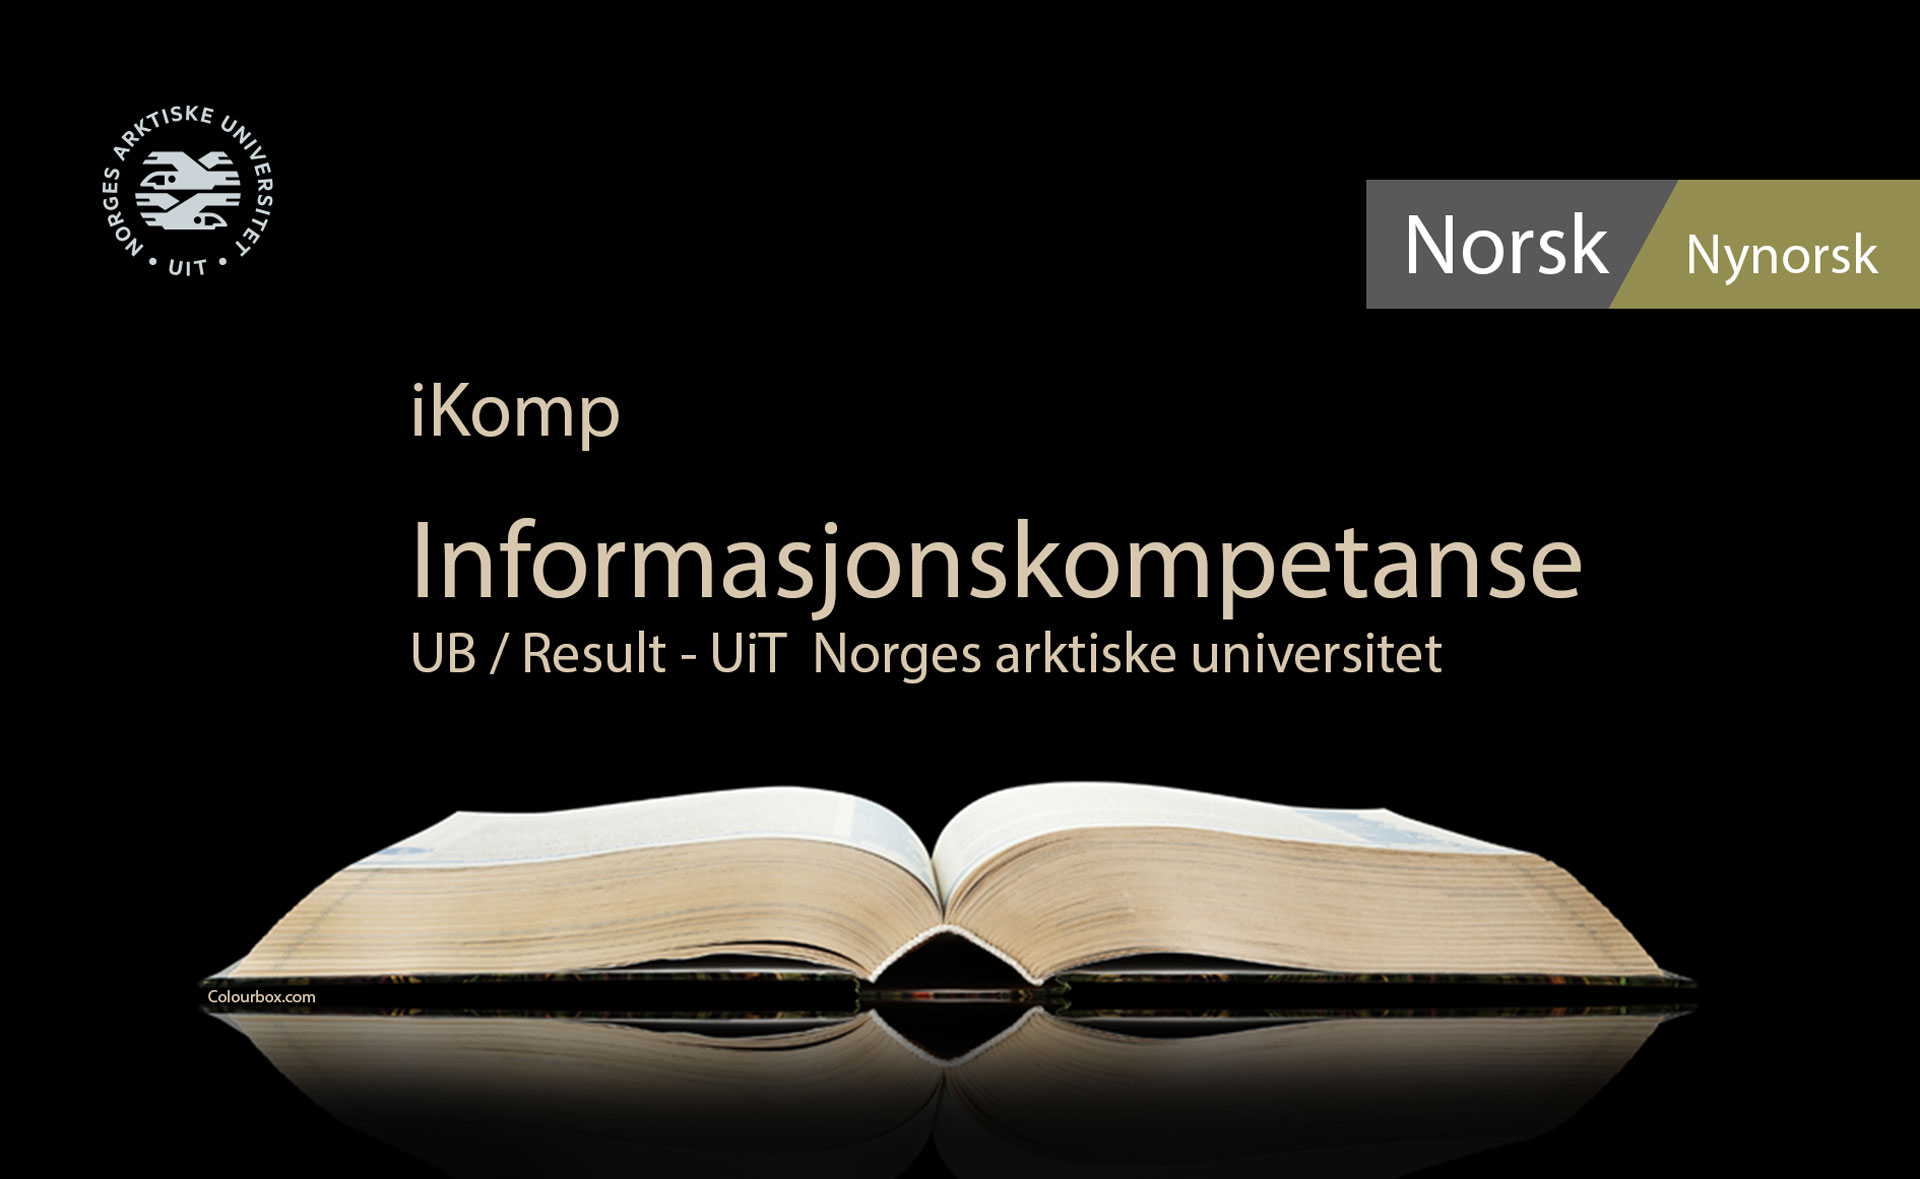 Informasjonskompetanse iKomp Norsk Nynorsk